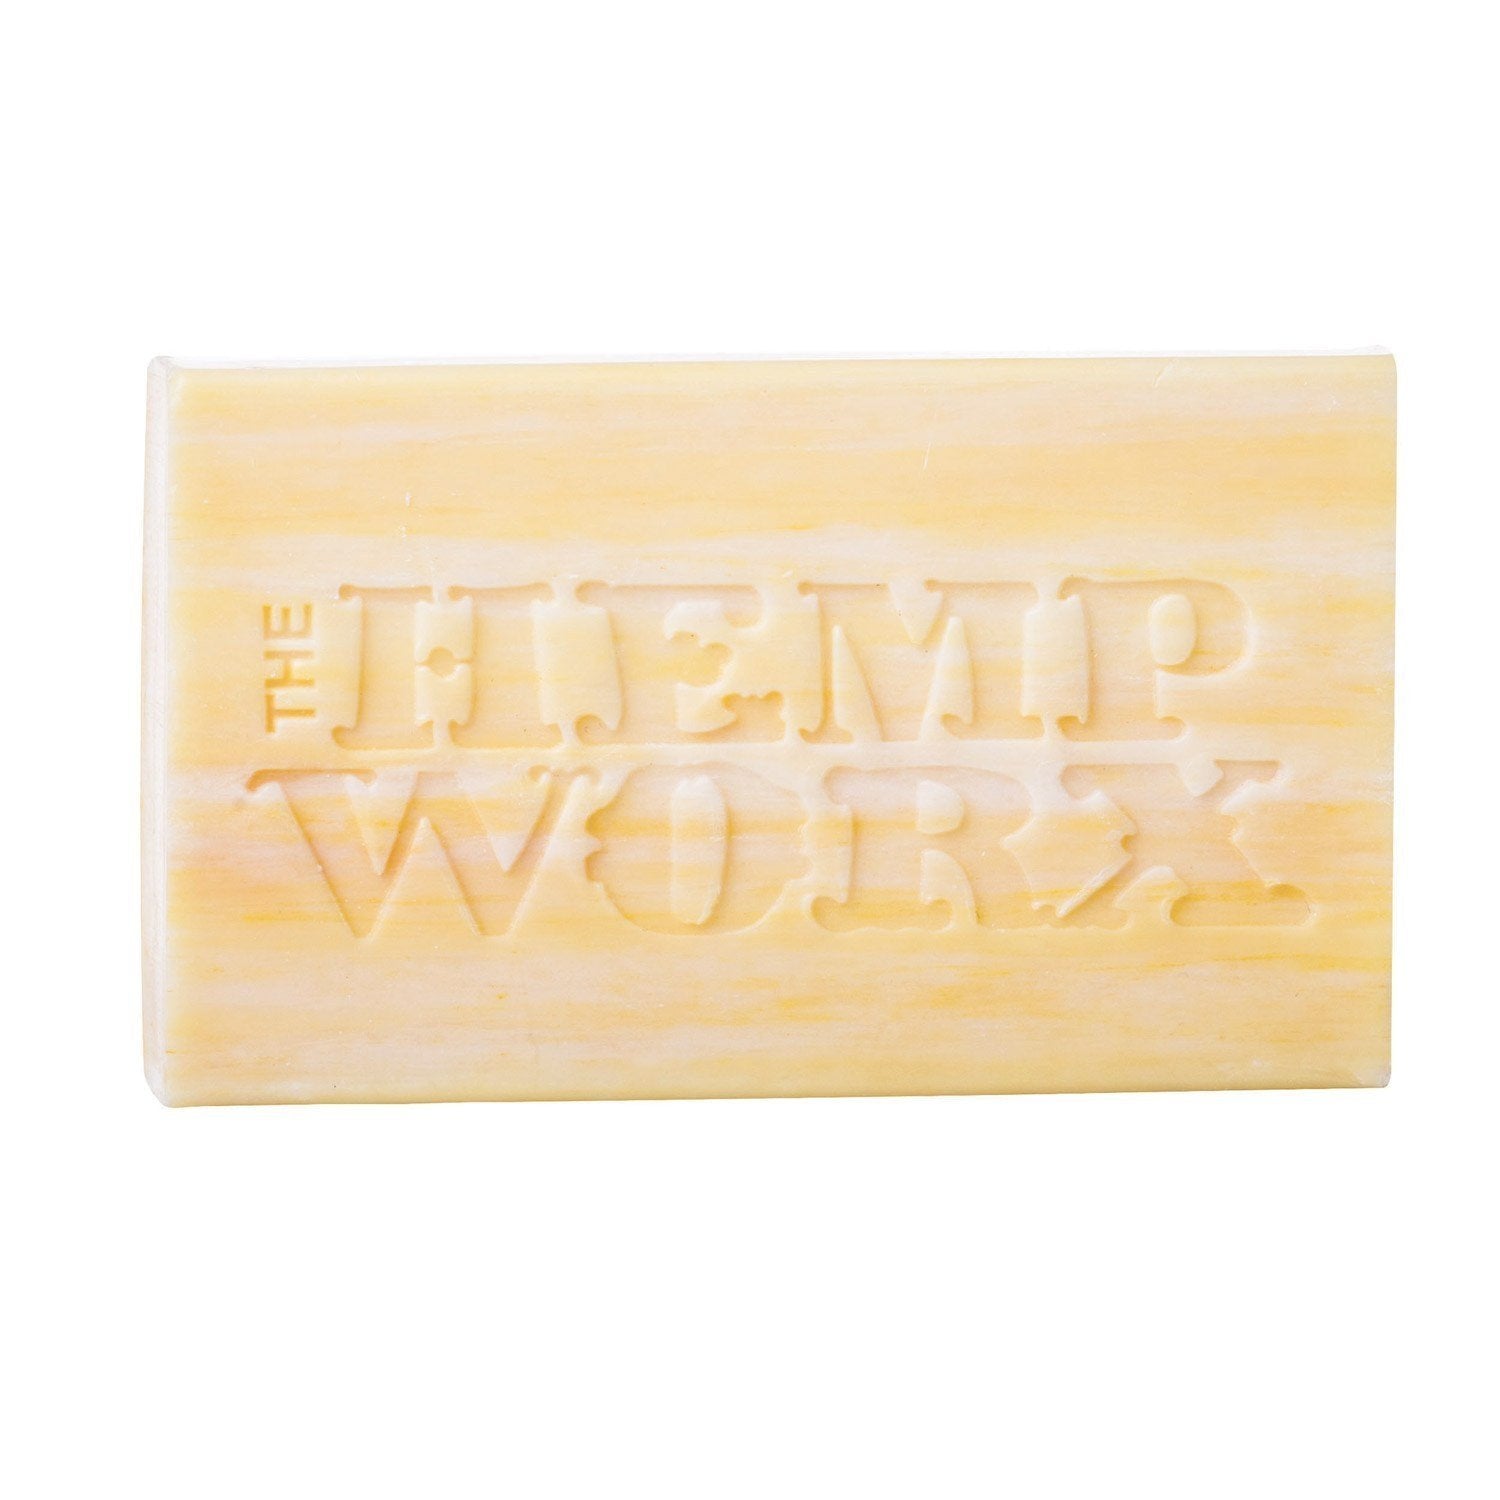 Hemp Worx Lemon Myrtle Soap Bar